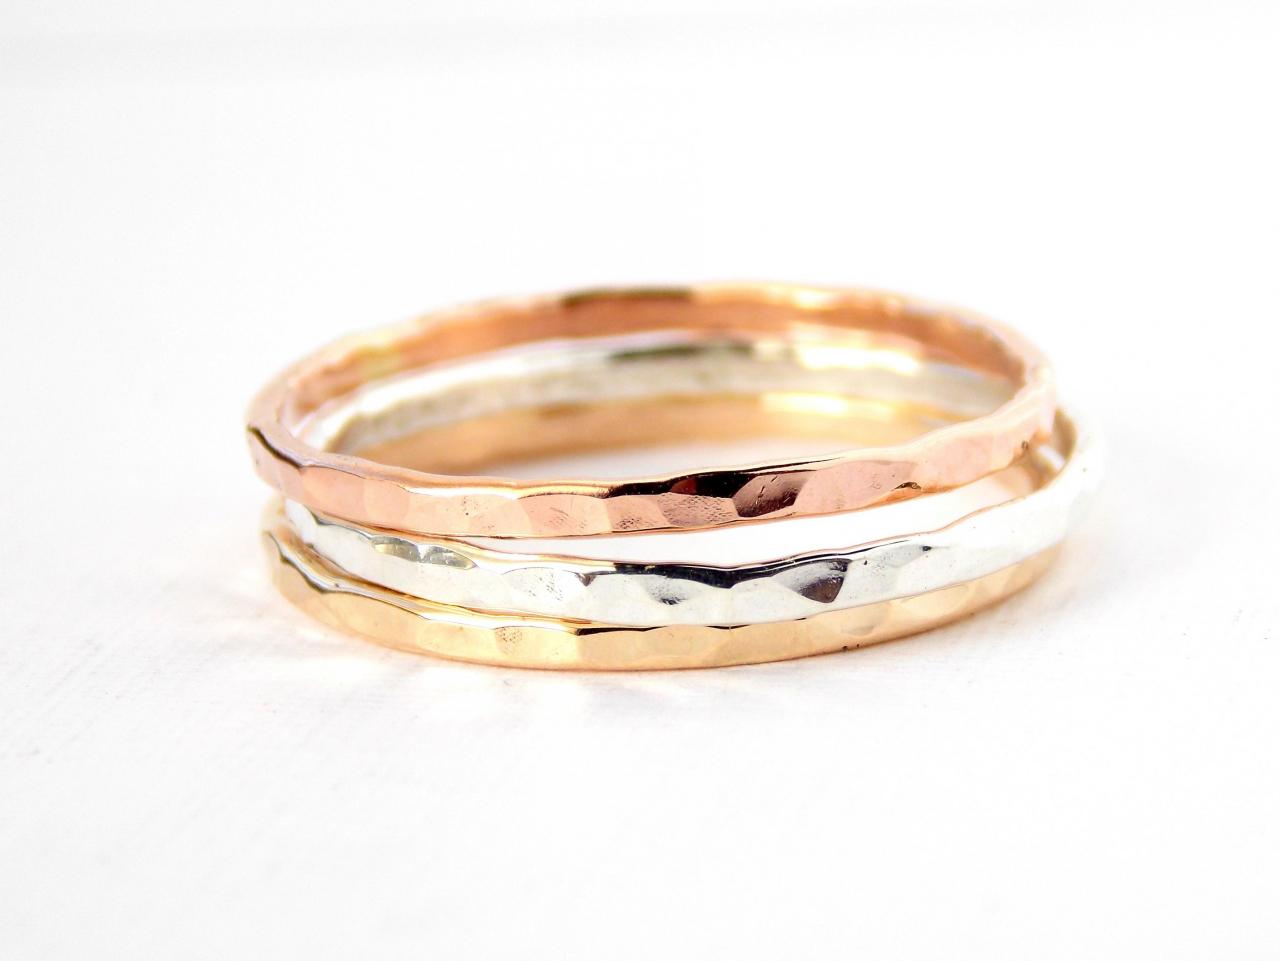 3 Reflection Stacking Ring: 14k Gold-filled Ring, Dainty Ring, Simple Ring, Gold Ring, Silver Ring, Skinny Ring